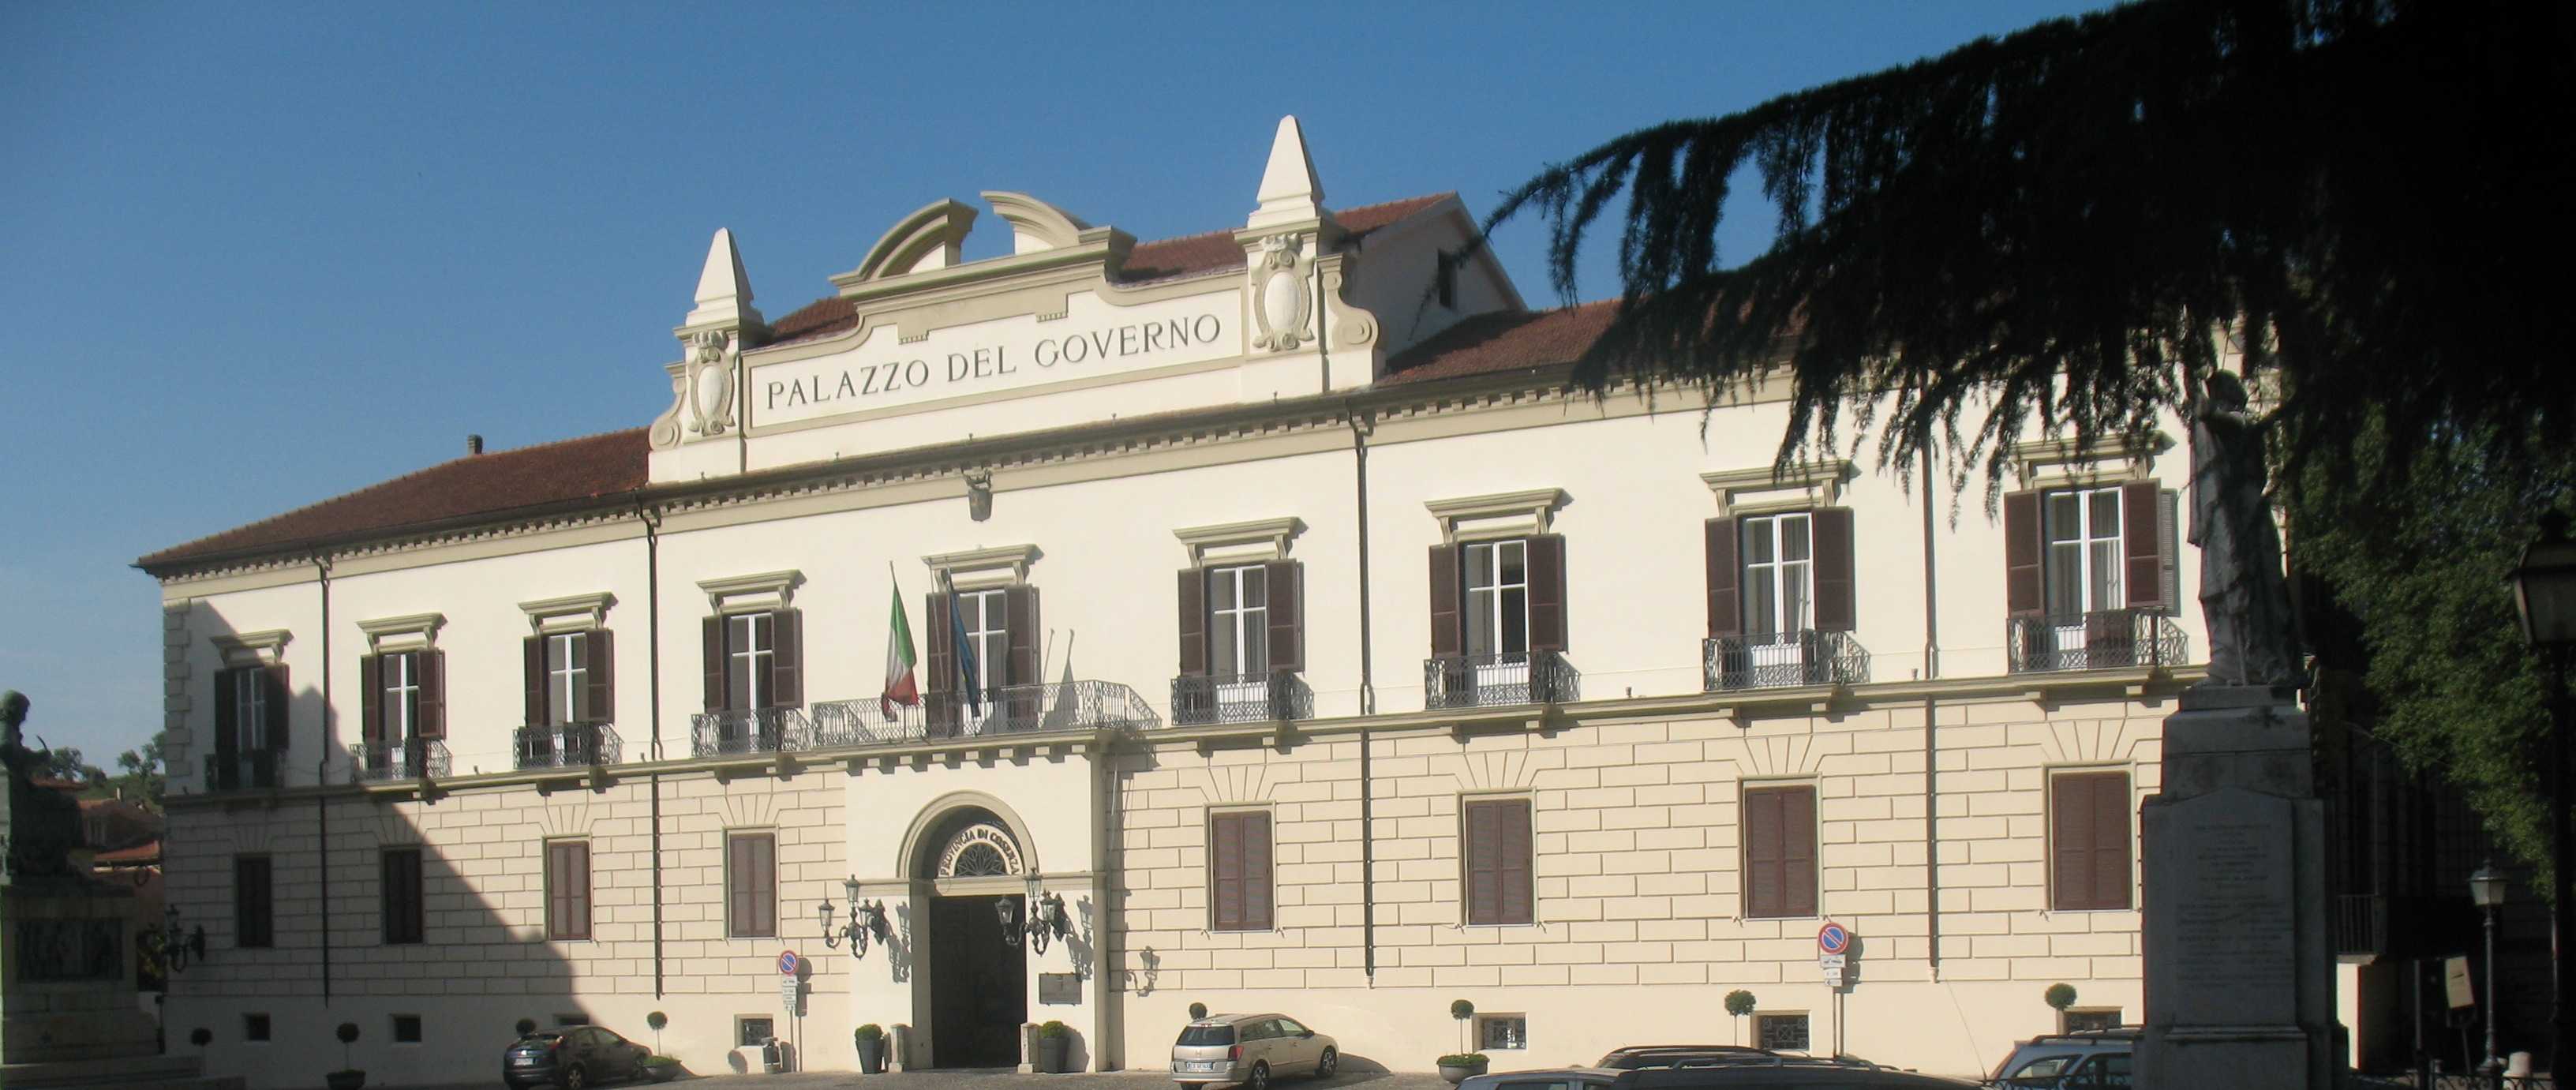 Al Palazzo della Provincia l'associazione "Insieme" parla di Unità d'Italia